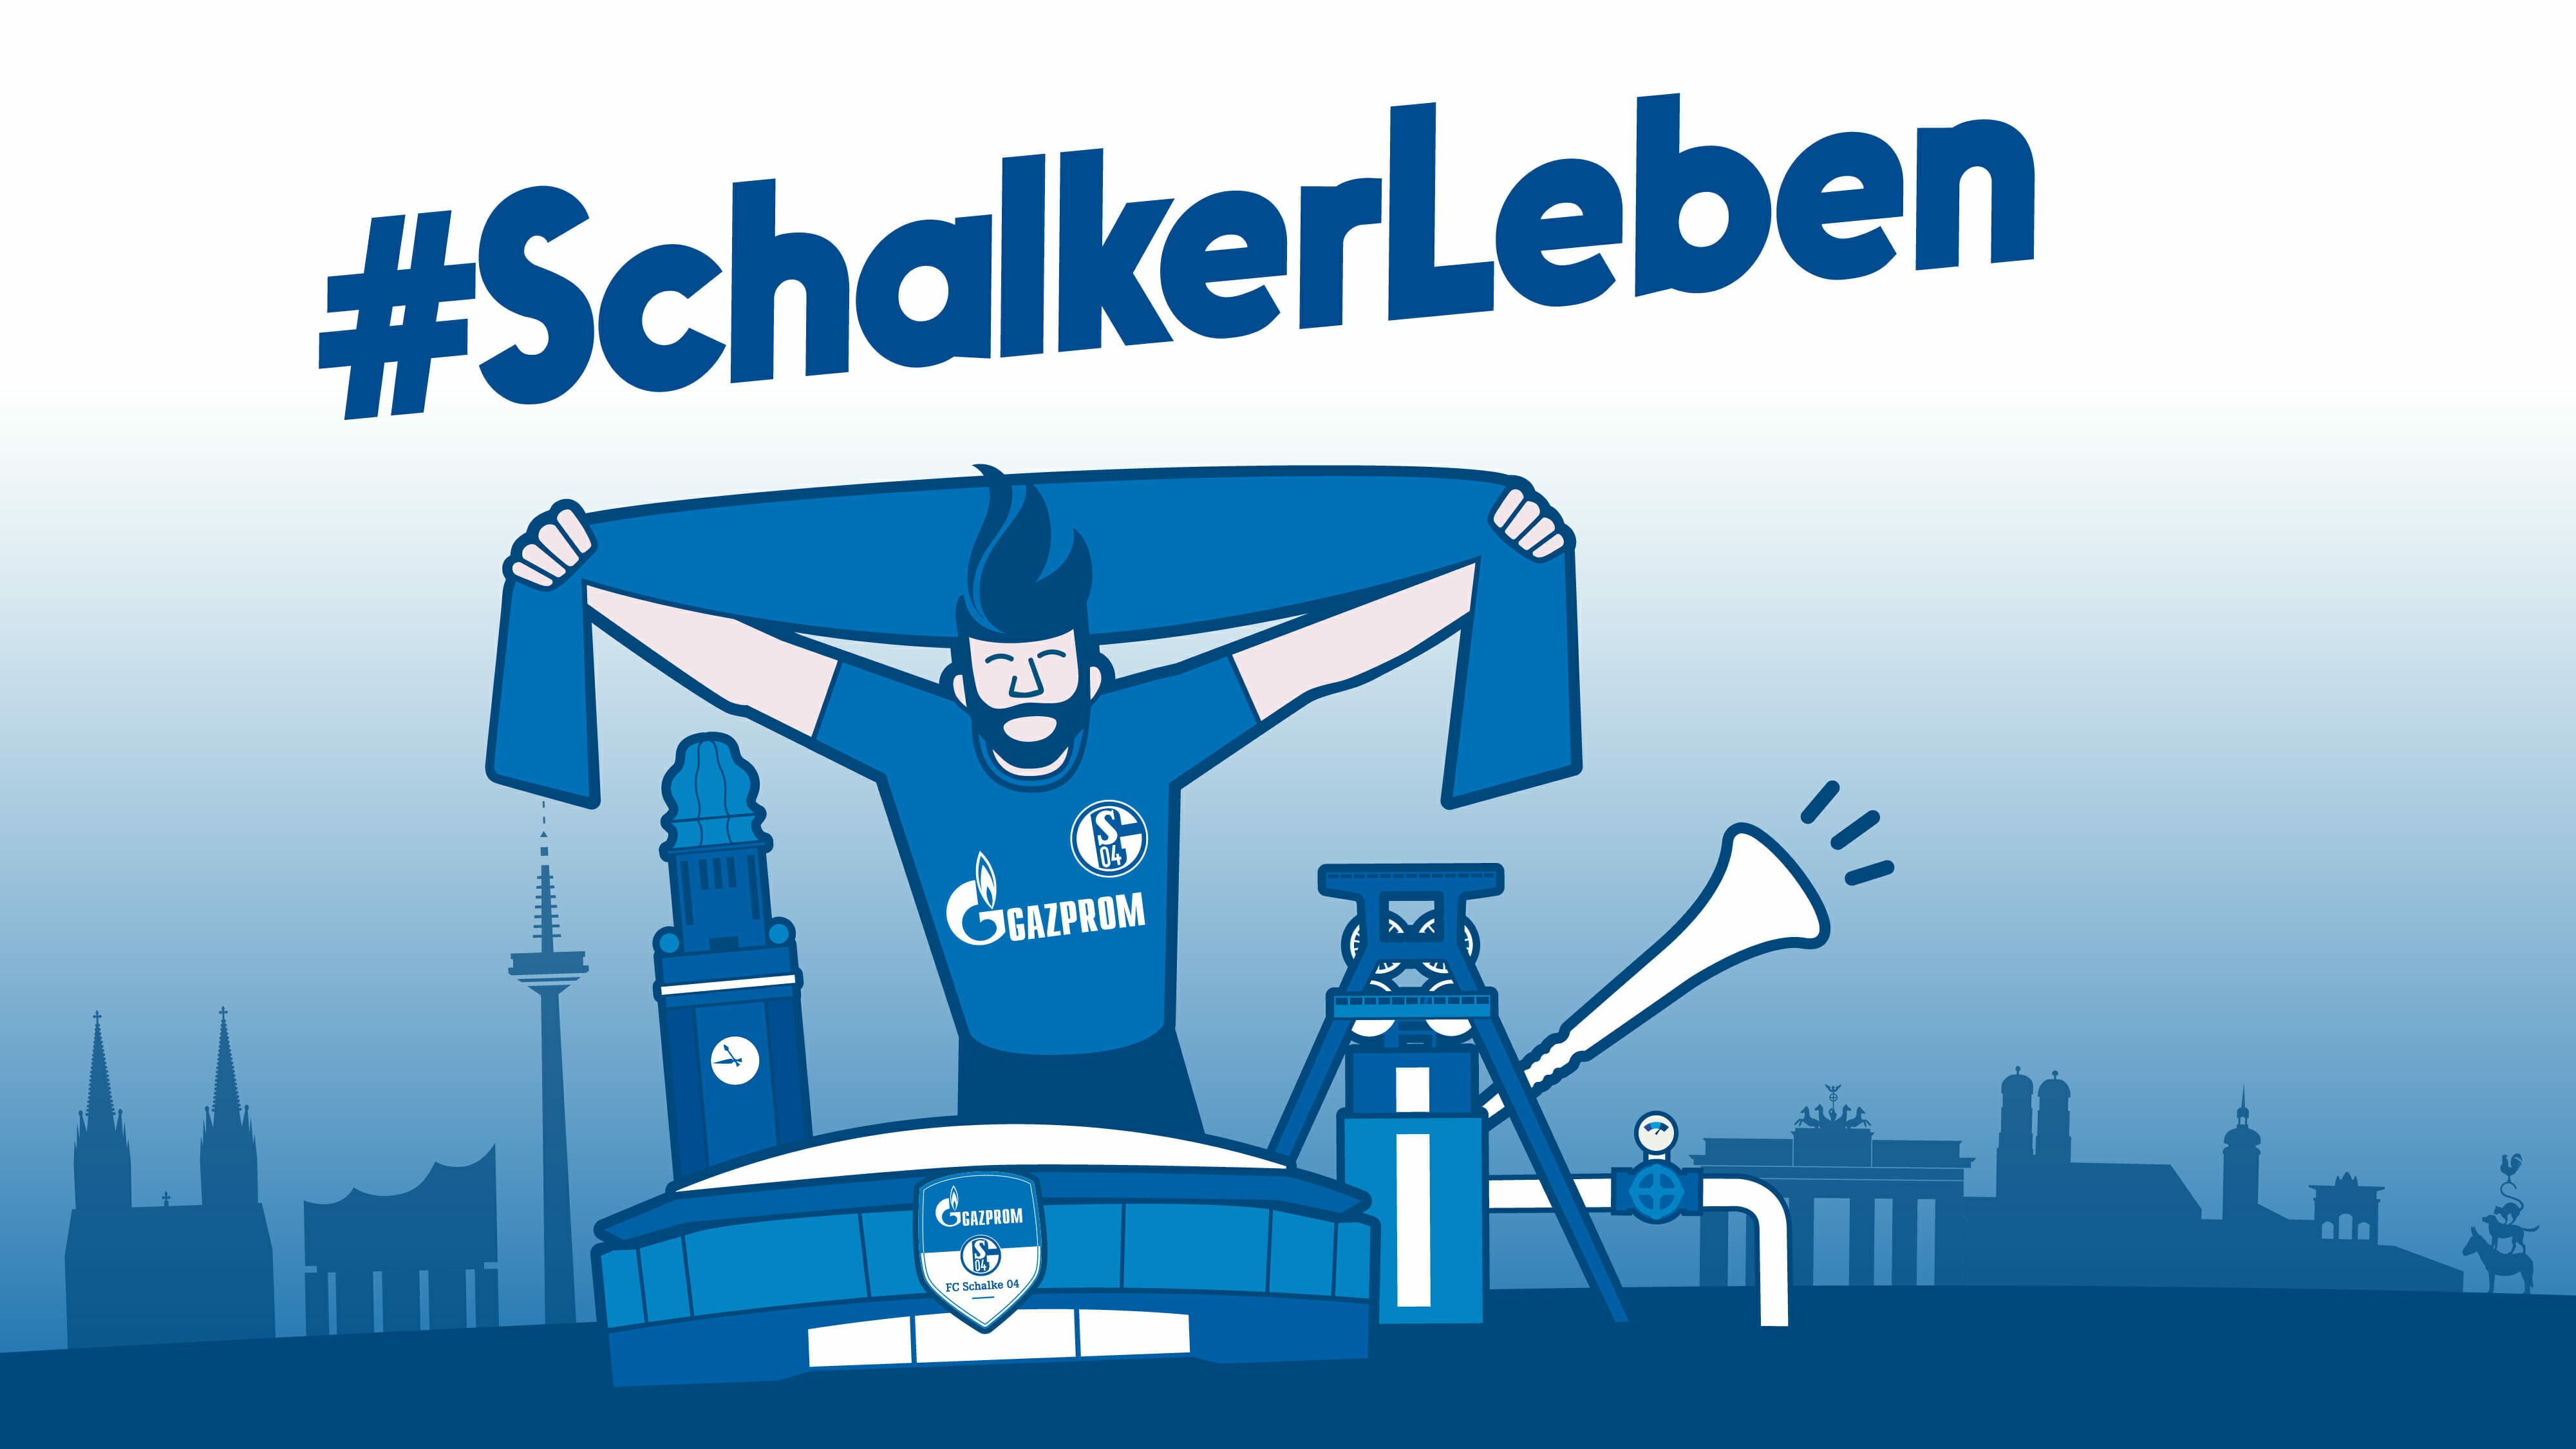 #SchalkerLeben